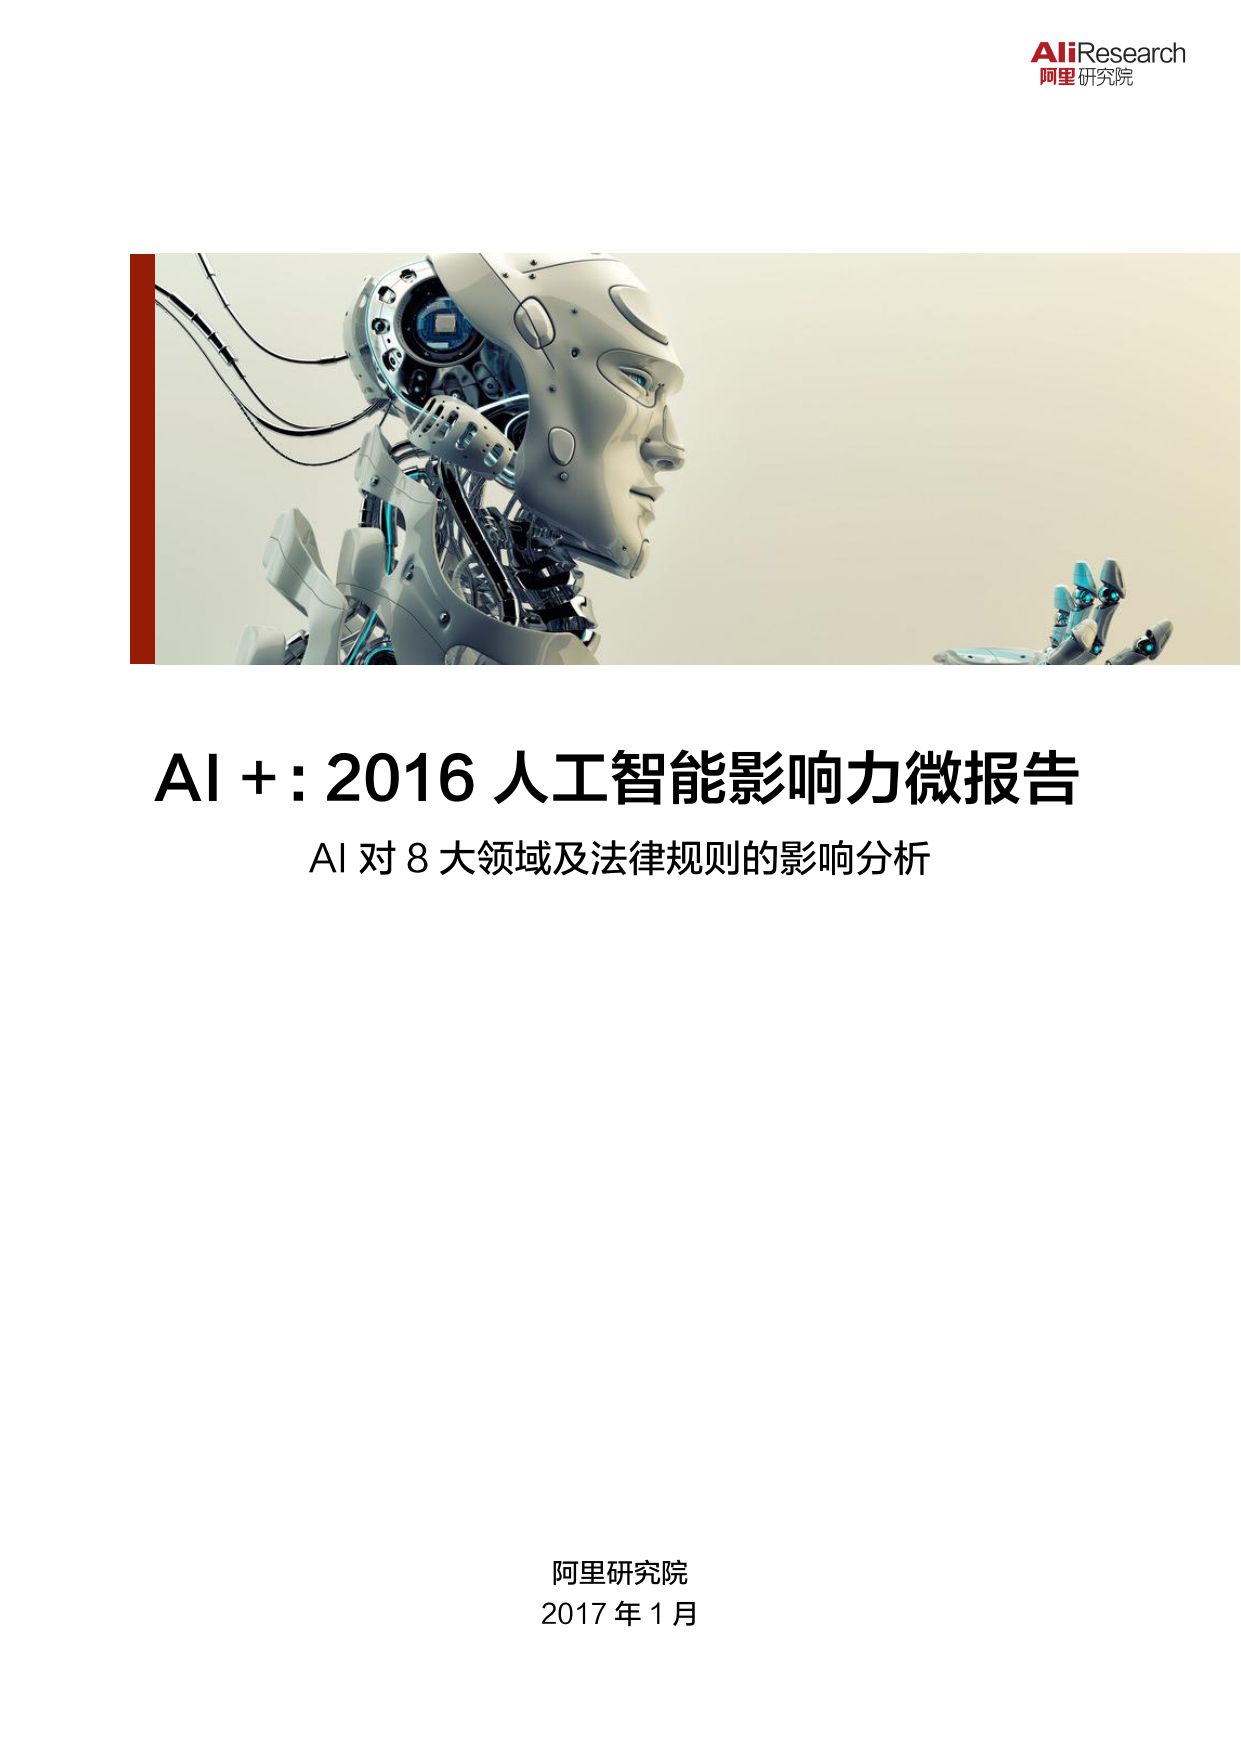 阿里研究院-AI2016人工智能影响力微报告-2017.1-20页